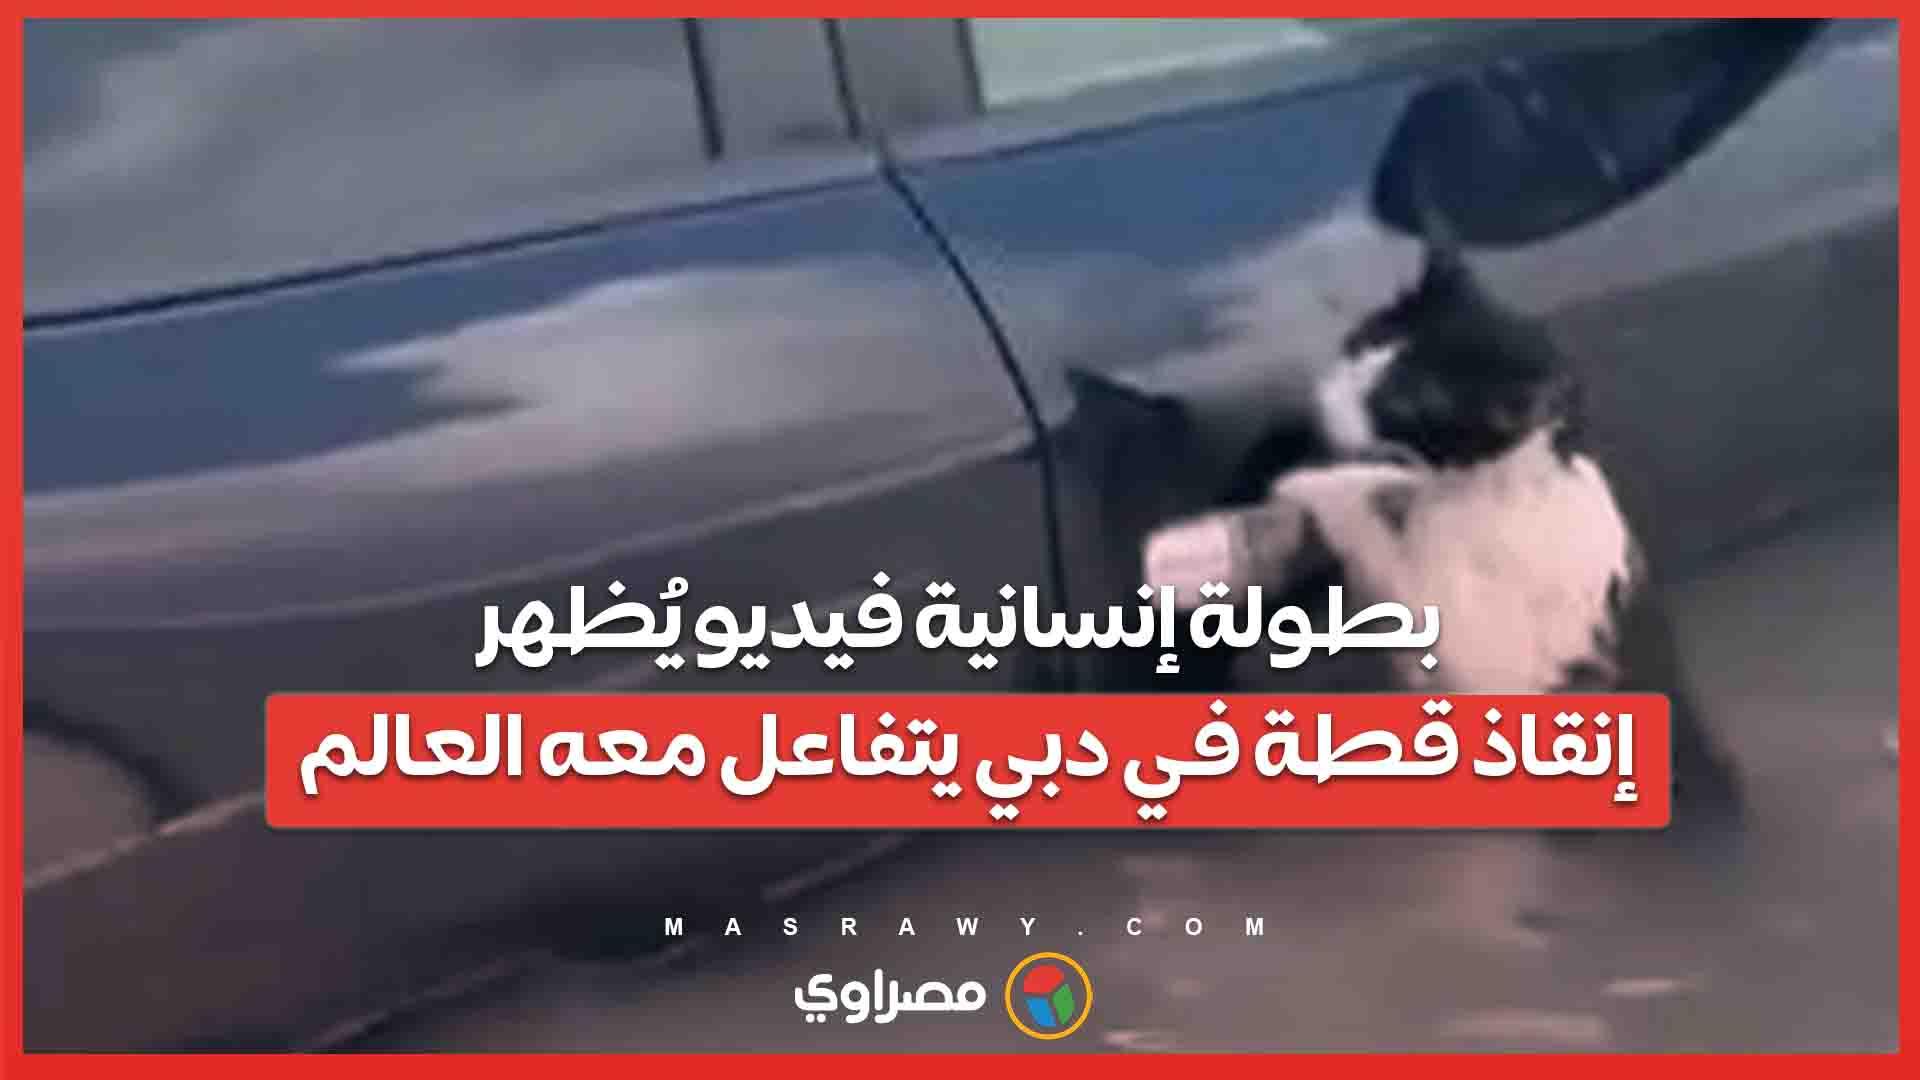 بطولة إنسانية فيديو يُظهر إنقاذ قطة في دبي يتفاع